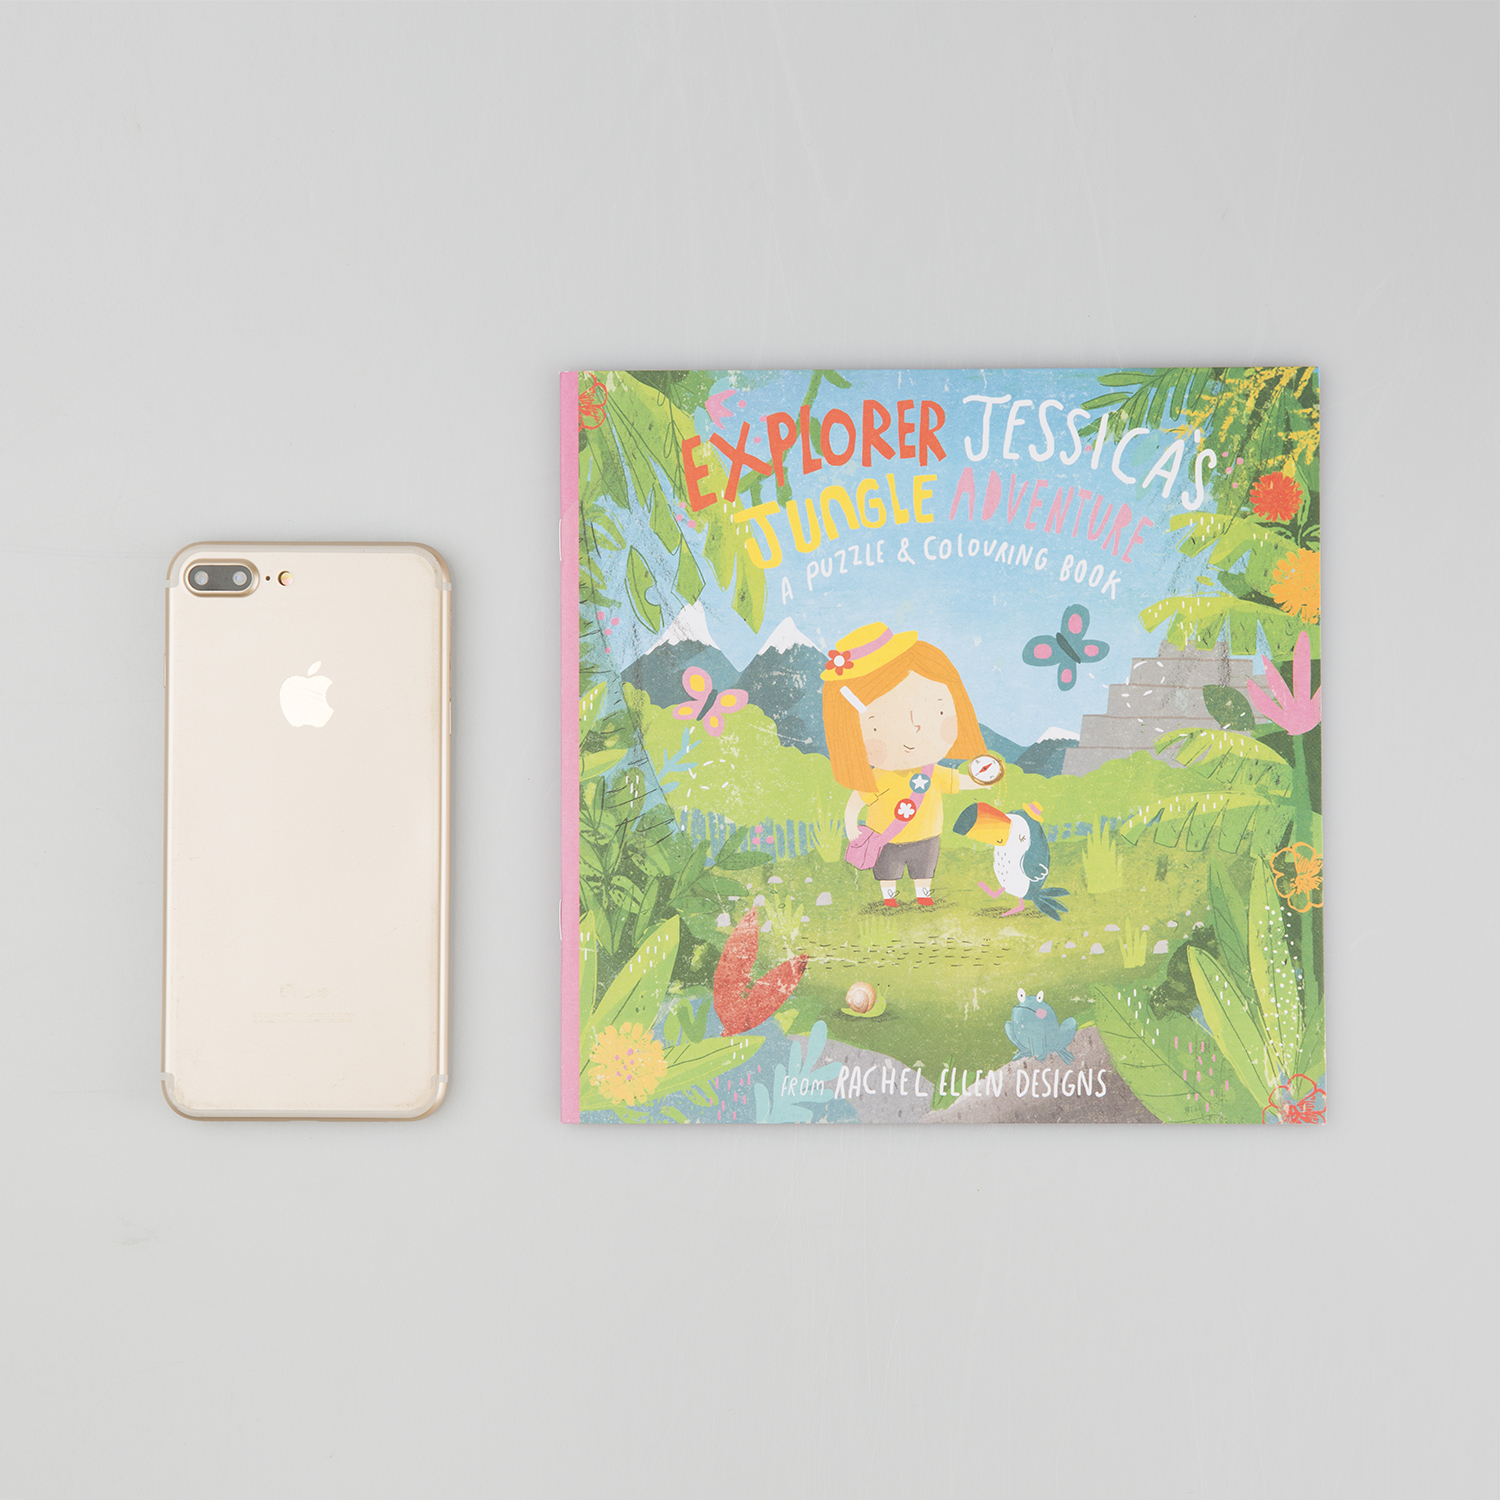 英国原产Rachel Ellen Designs杰西卡的丛林冒险双面画图本 彩色